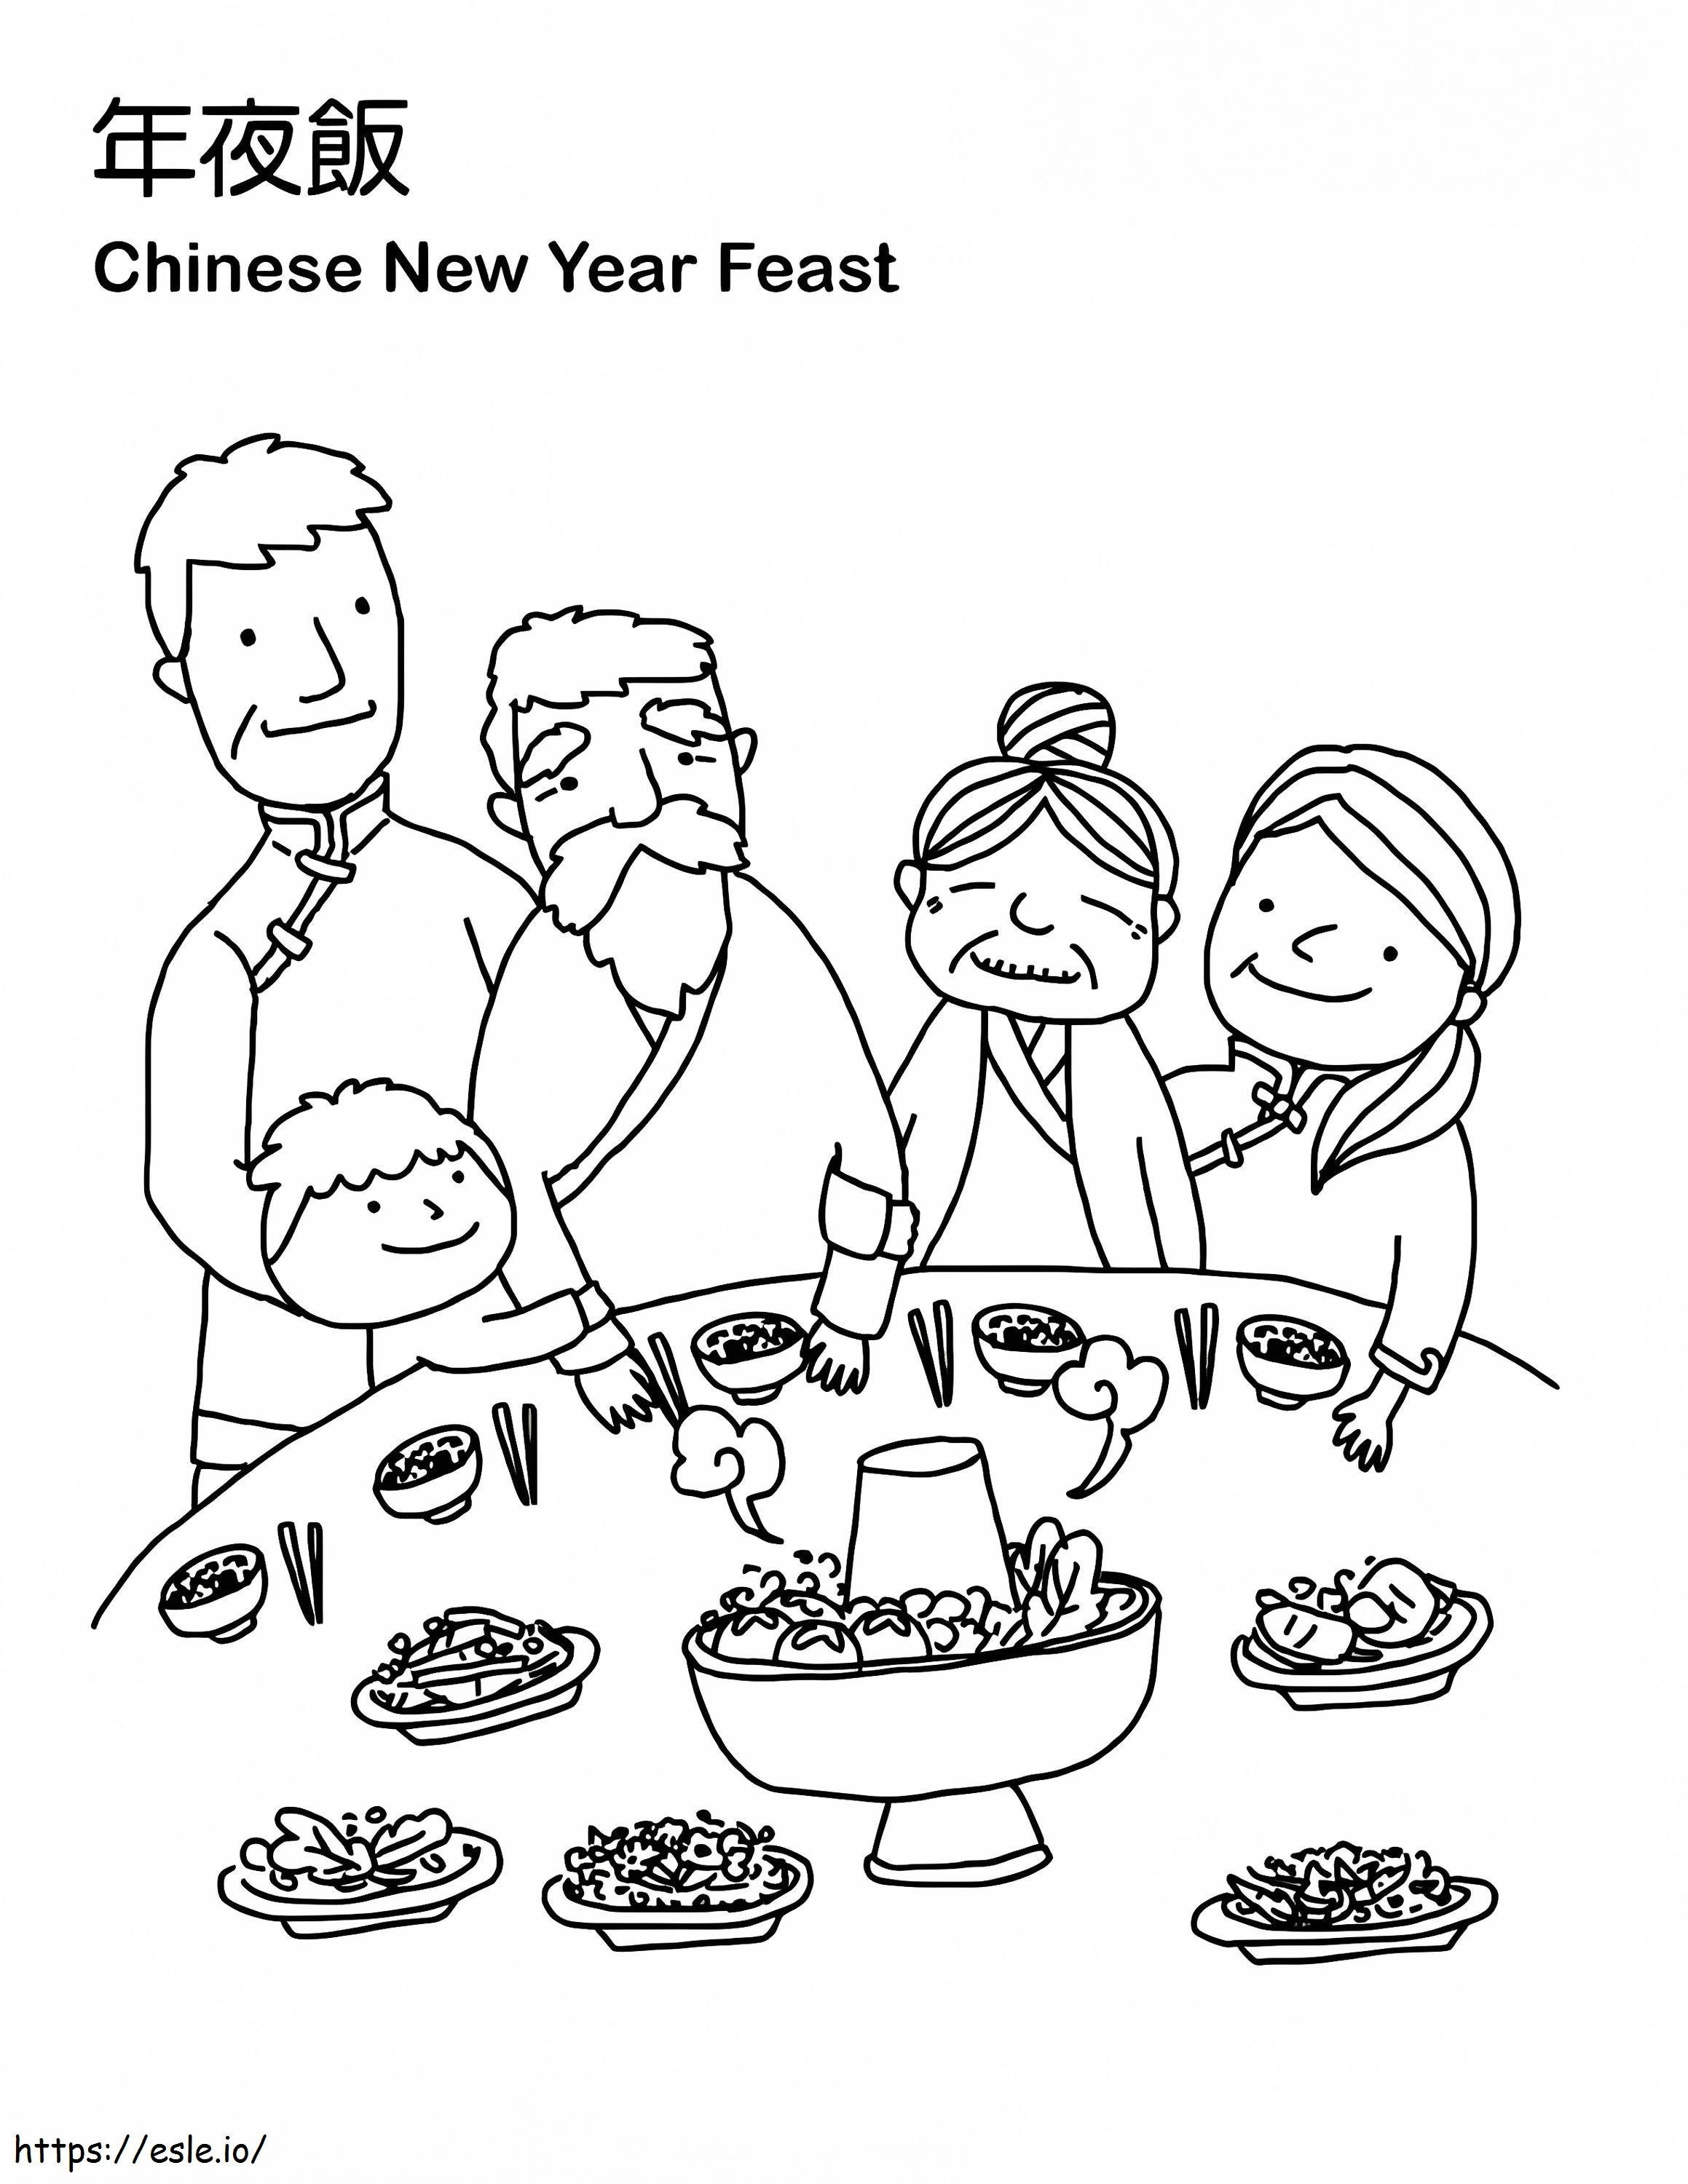 Fiesta del año nuevo chino para colorear